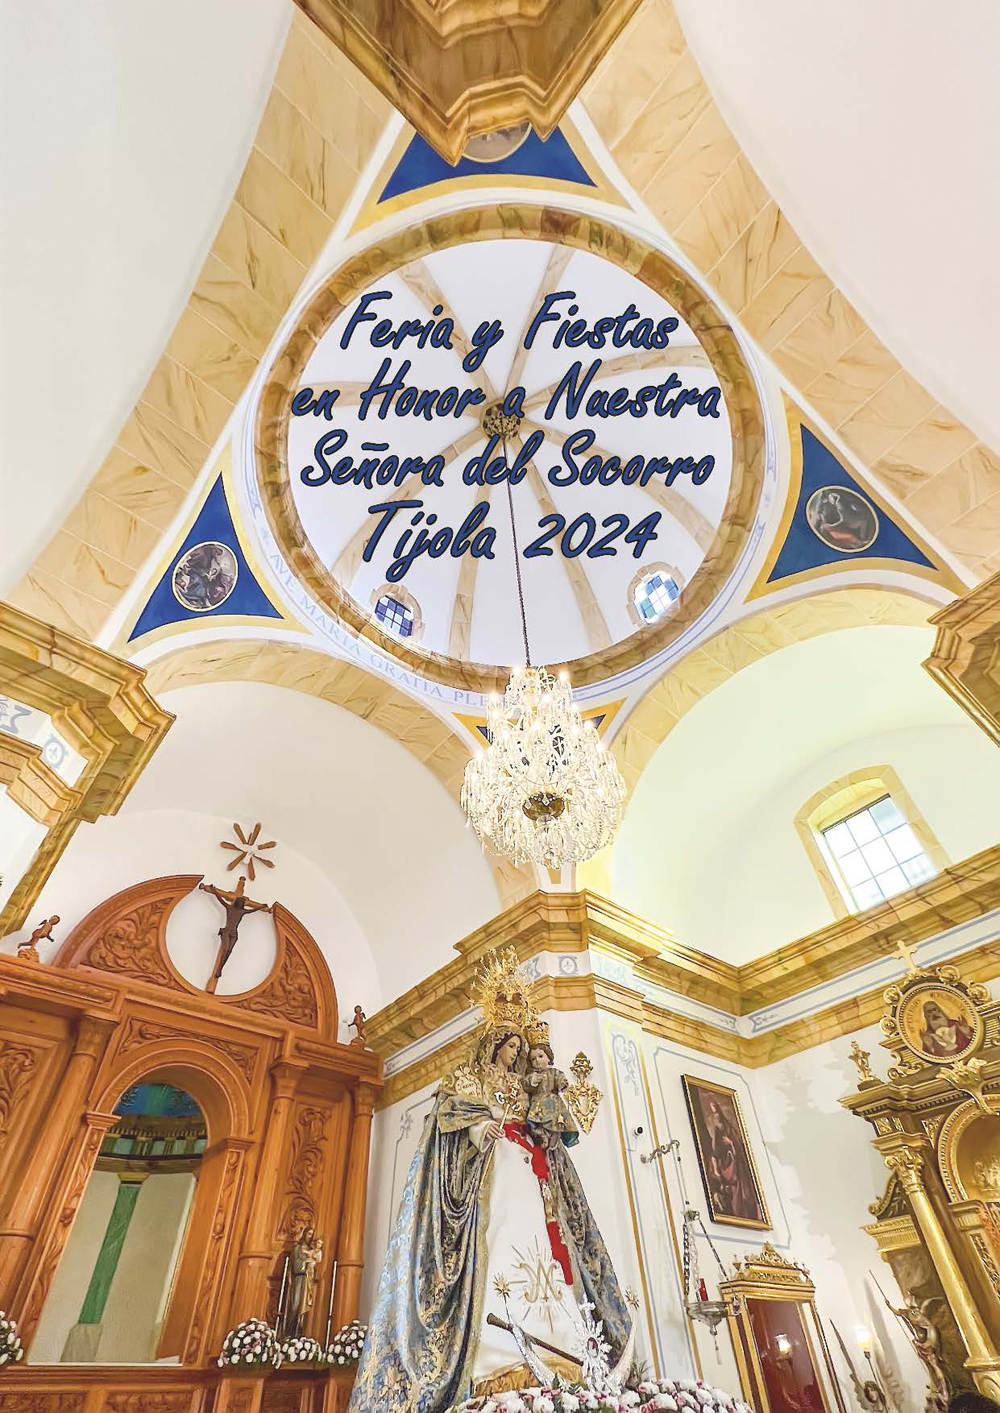 Imagen de la Portada del Programa de Fiestas de Verano de Tíjola 2024. Fotografía del Interior reformado de la ermita de la Virgen del Socorro al Fondo.